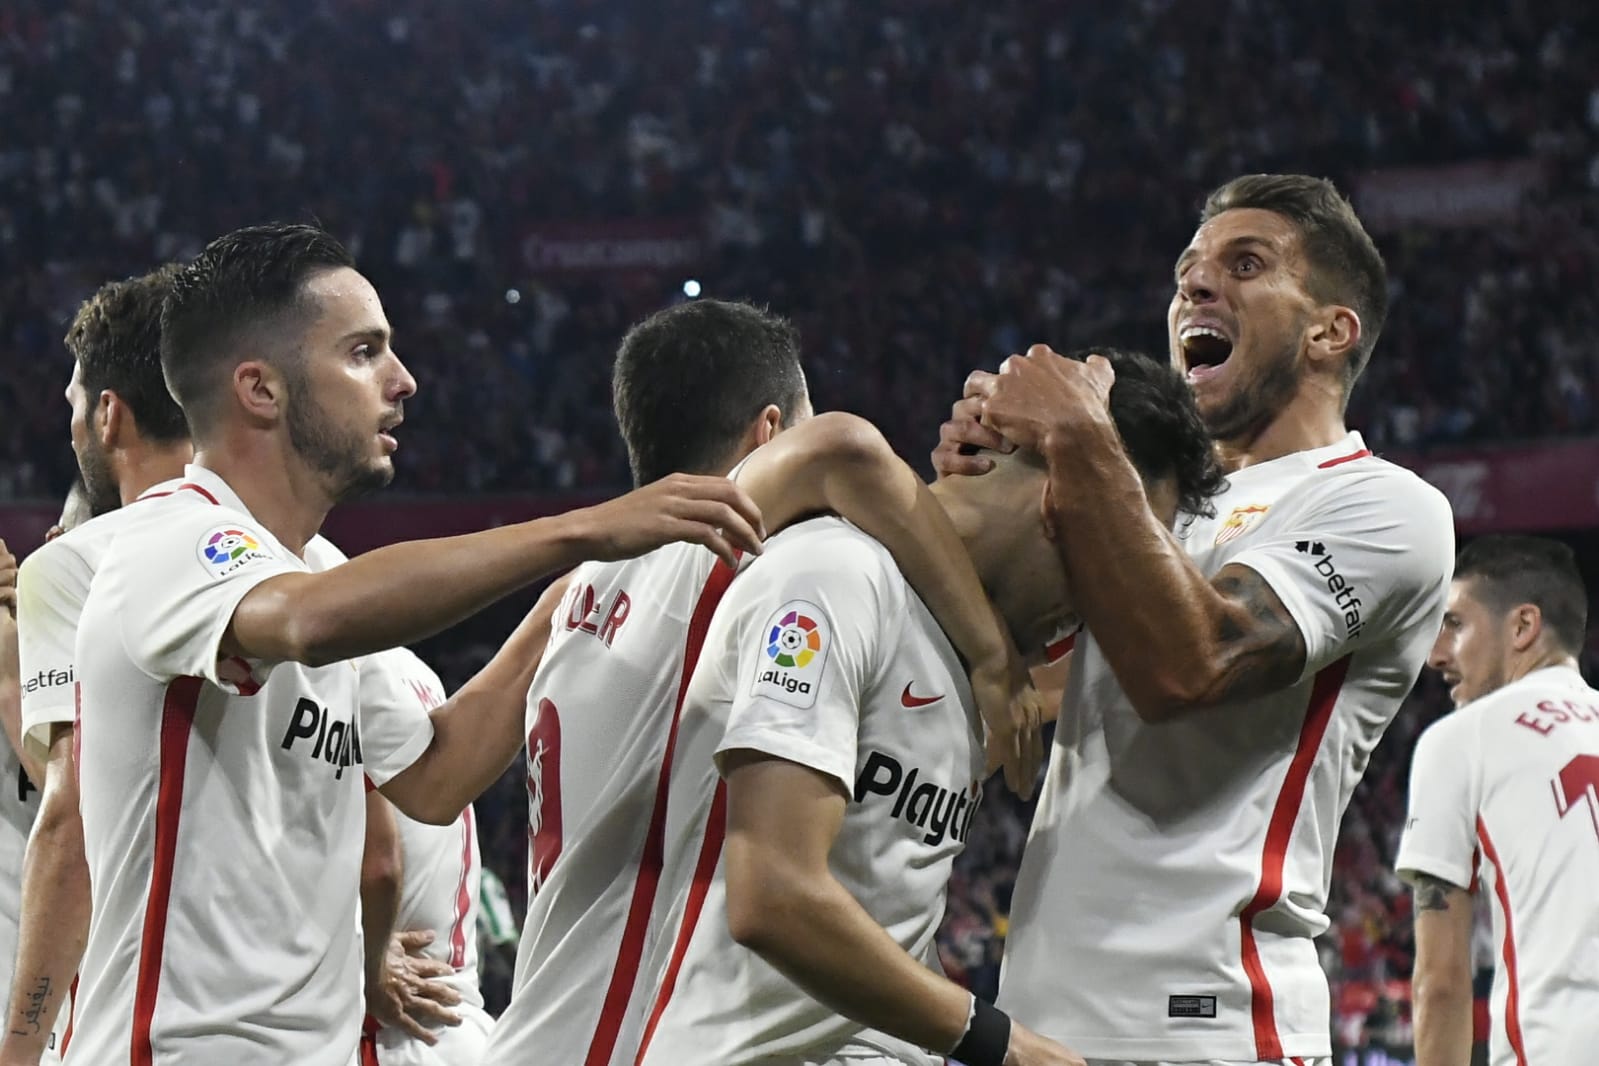 El Sevilla FC celebra un gol ante el Betis